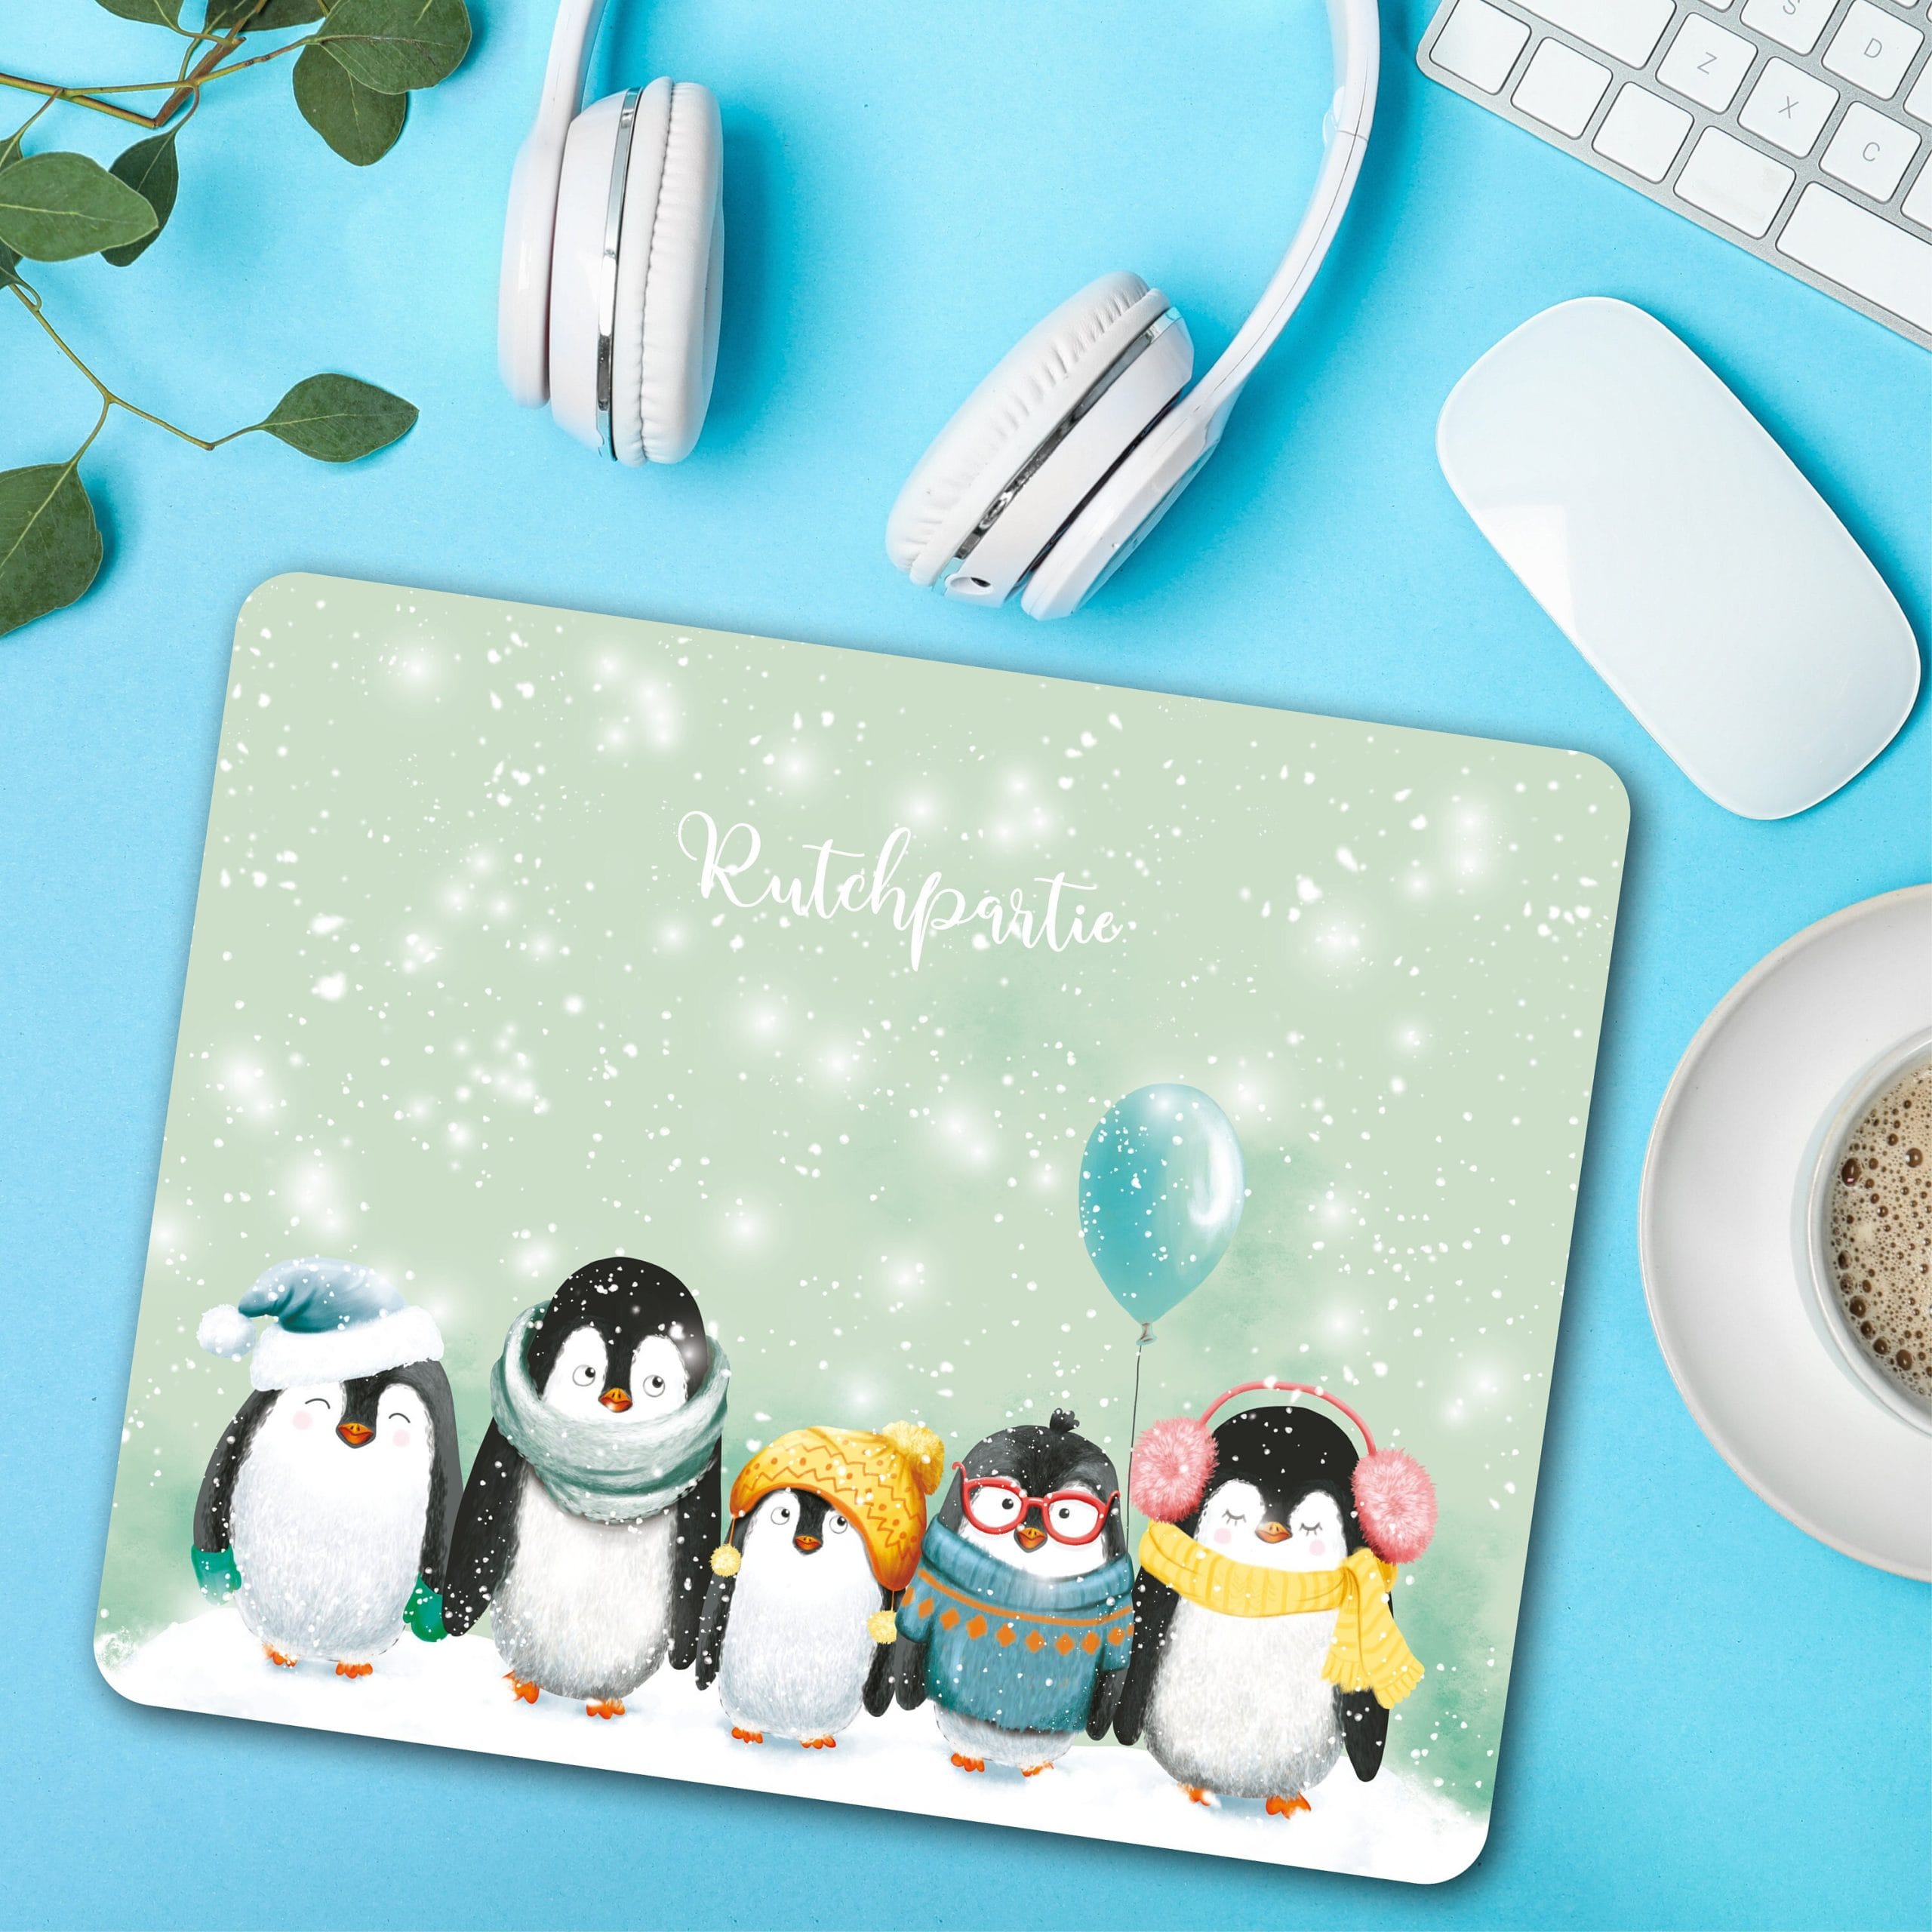 Mauspad Mousepad Pinguine winterlich, Schreibtischunterlage benutzerdefiniertes Geschenk Büro